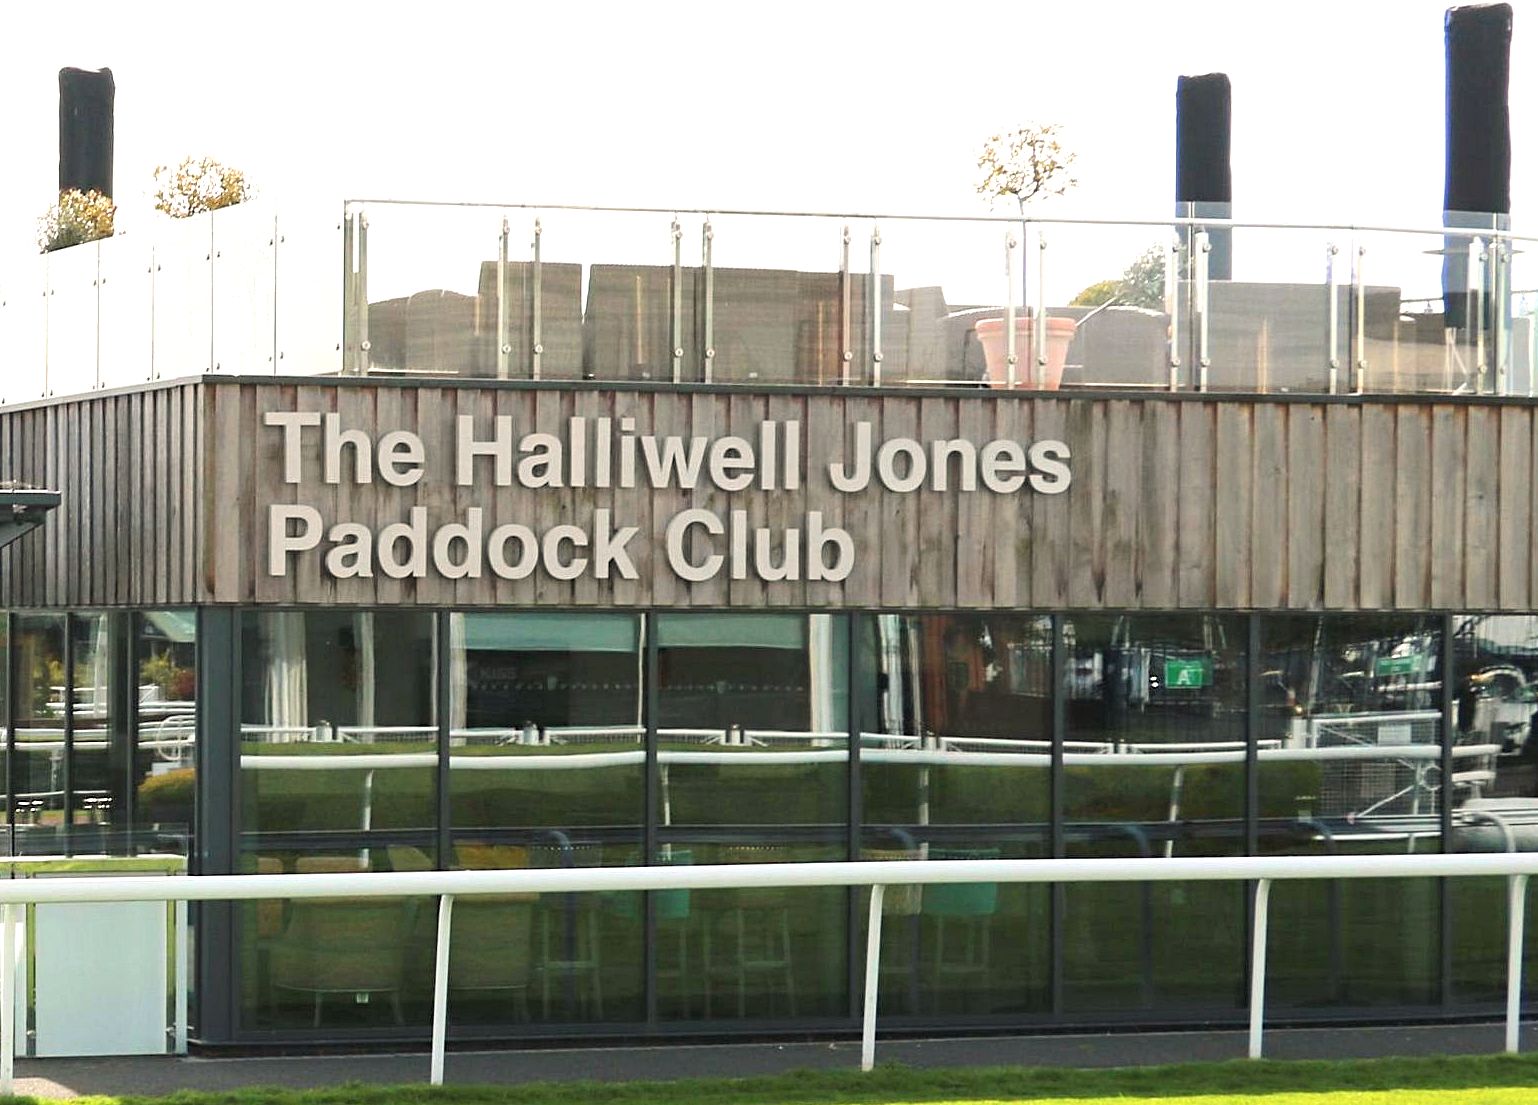 The Halliwell Jones Paddock Club thumbnail image